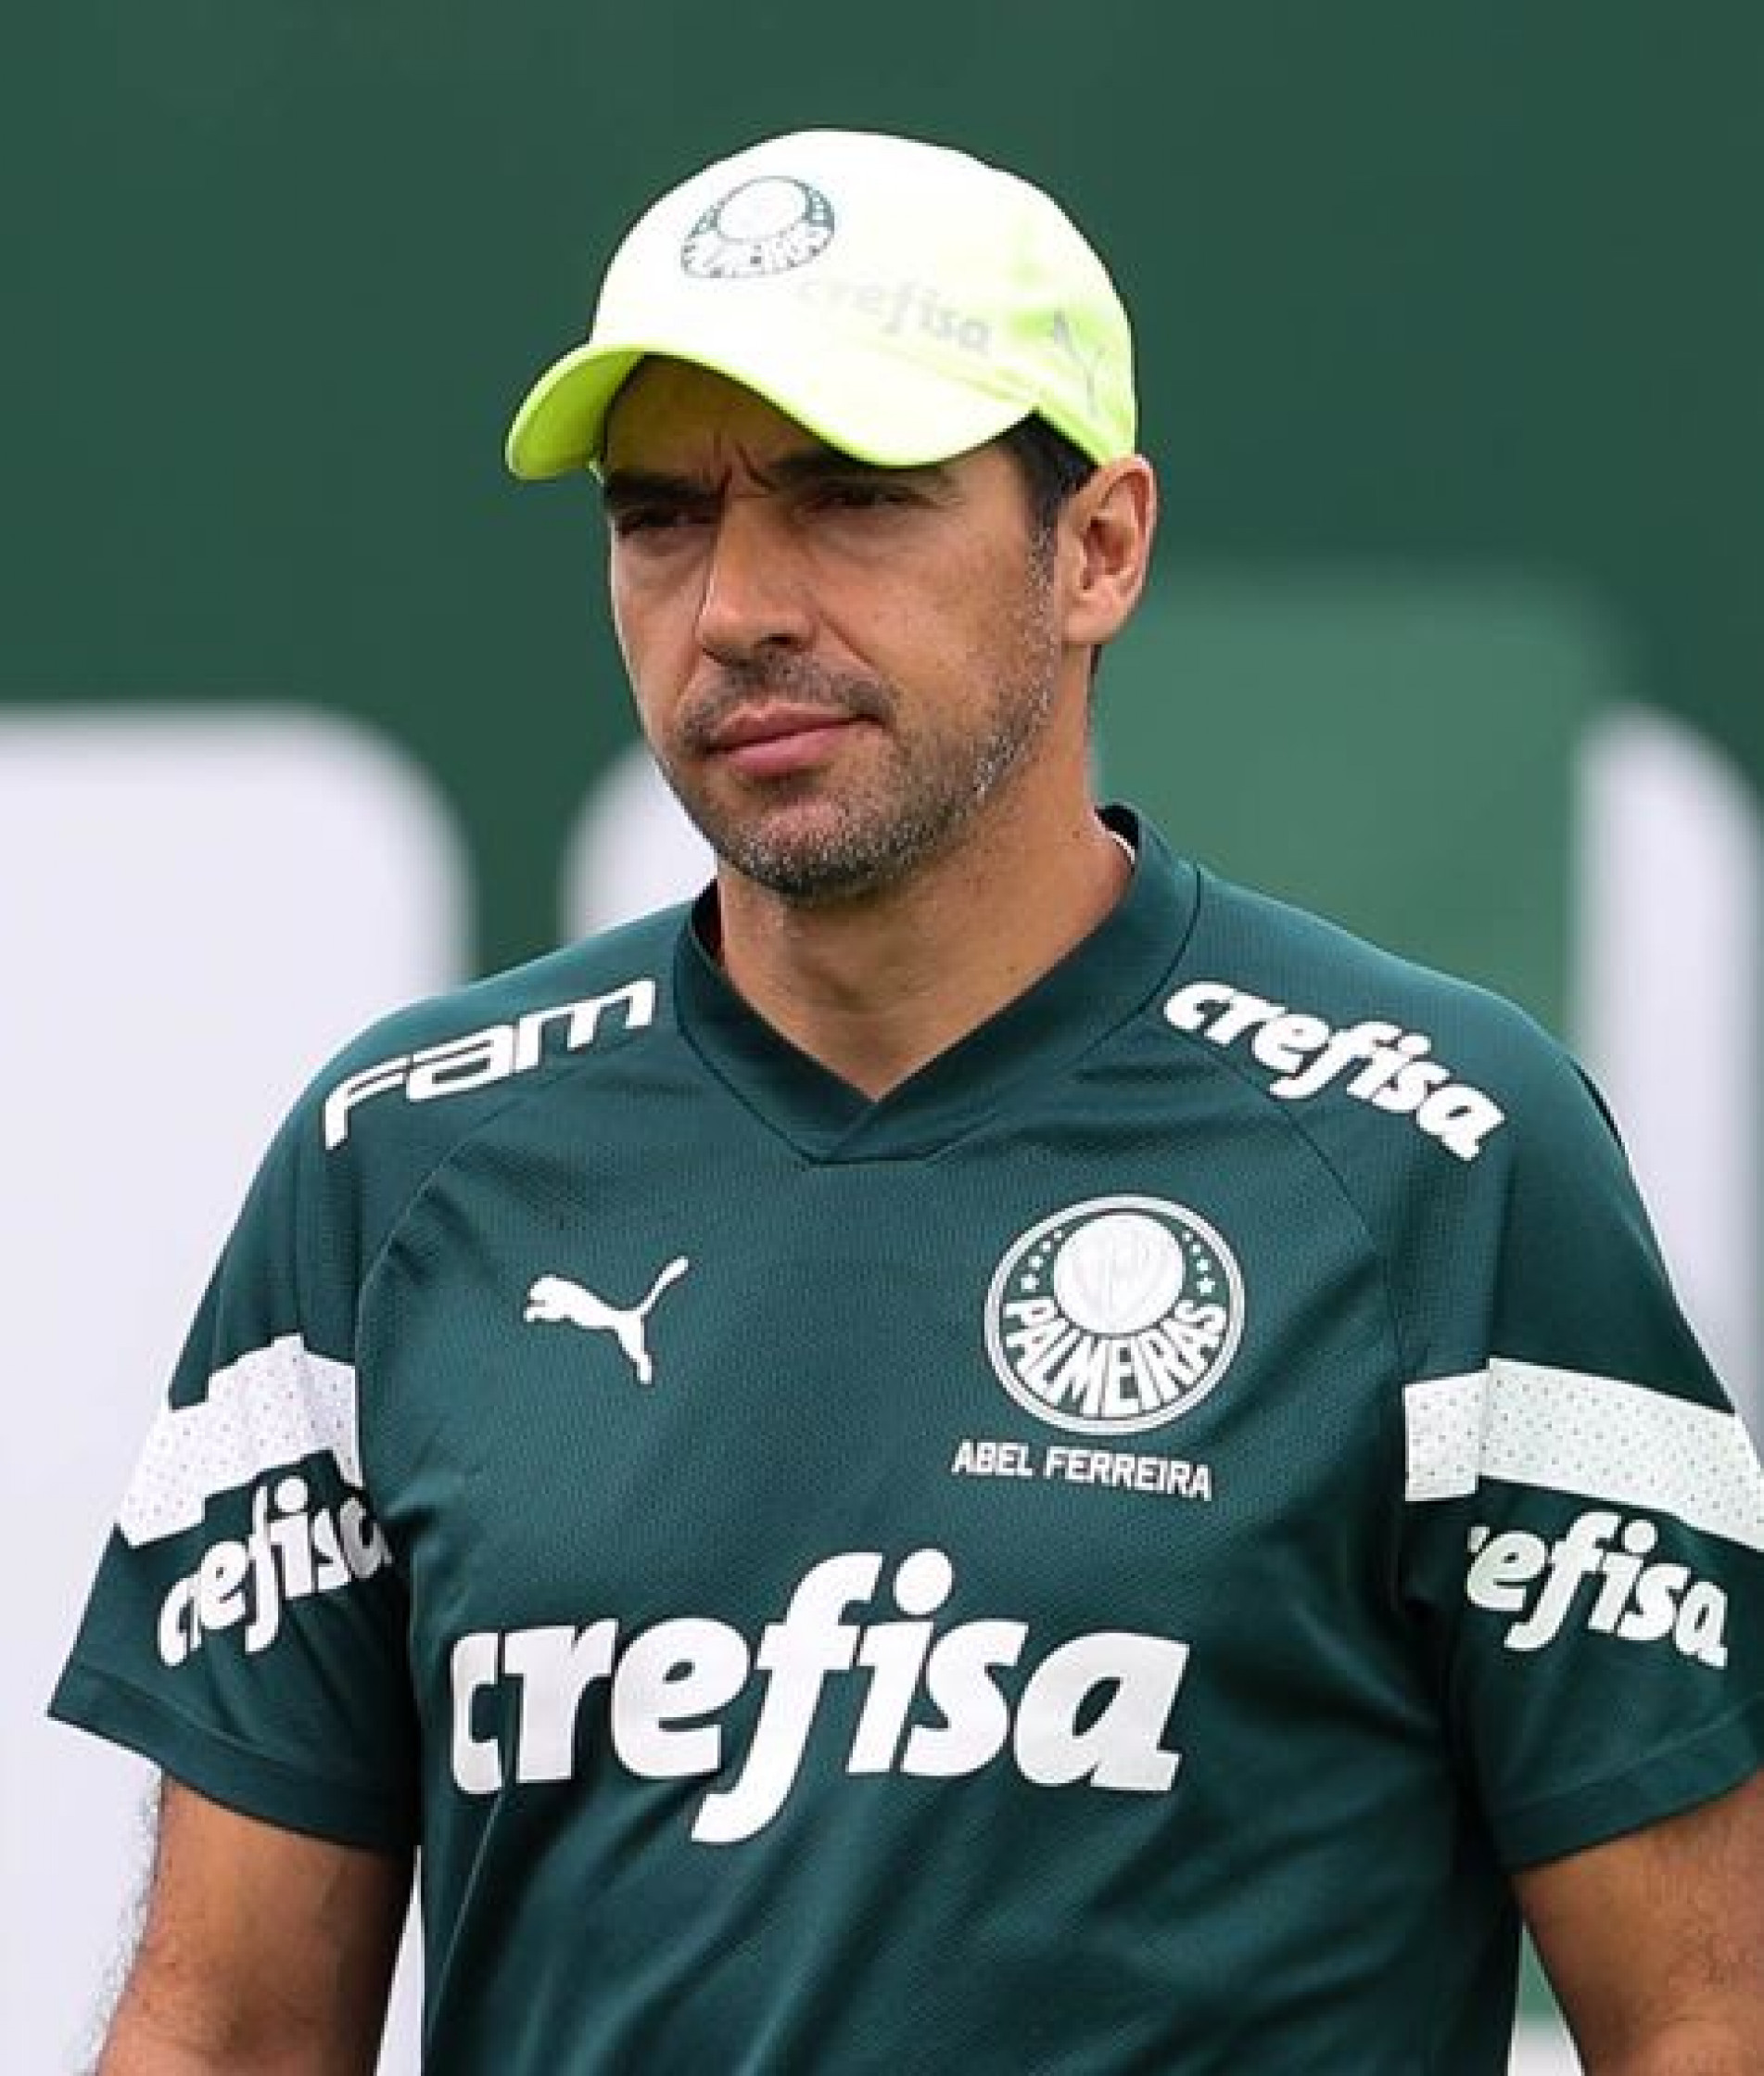 Liga de Futebol Mexicano suspende todos os jogos da rodada